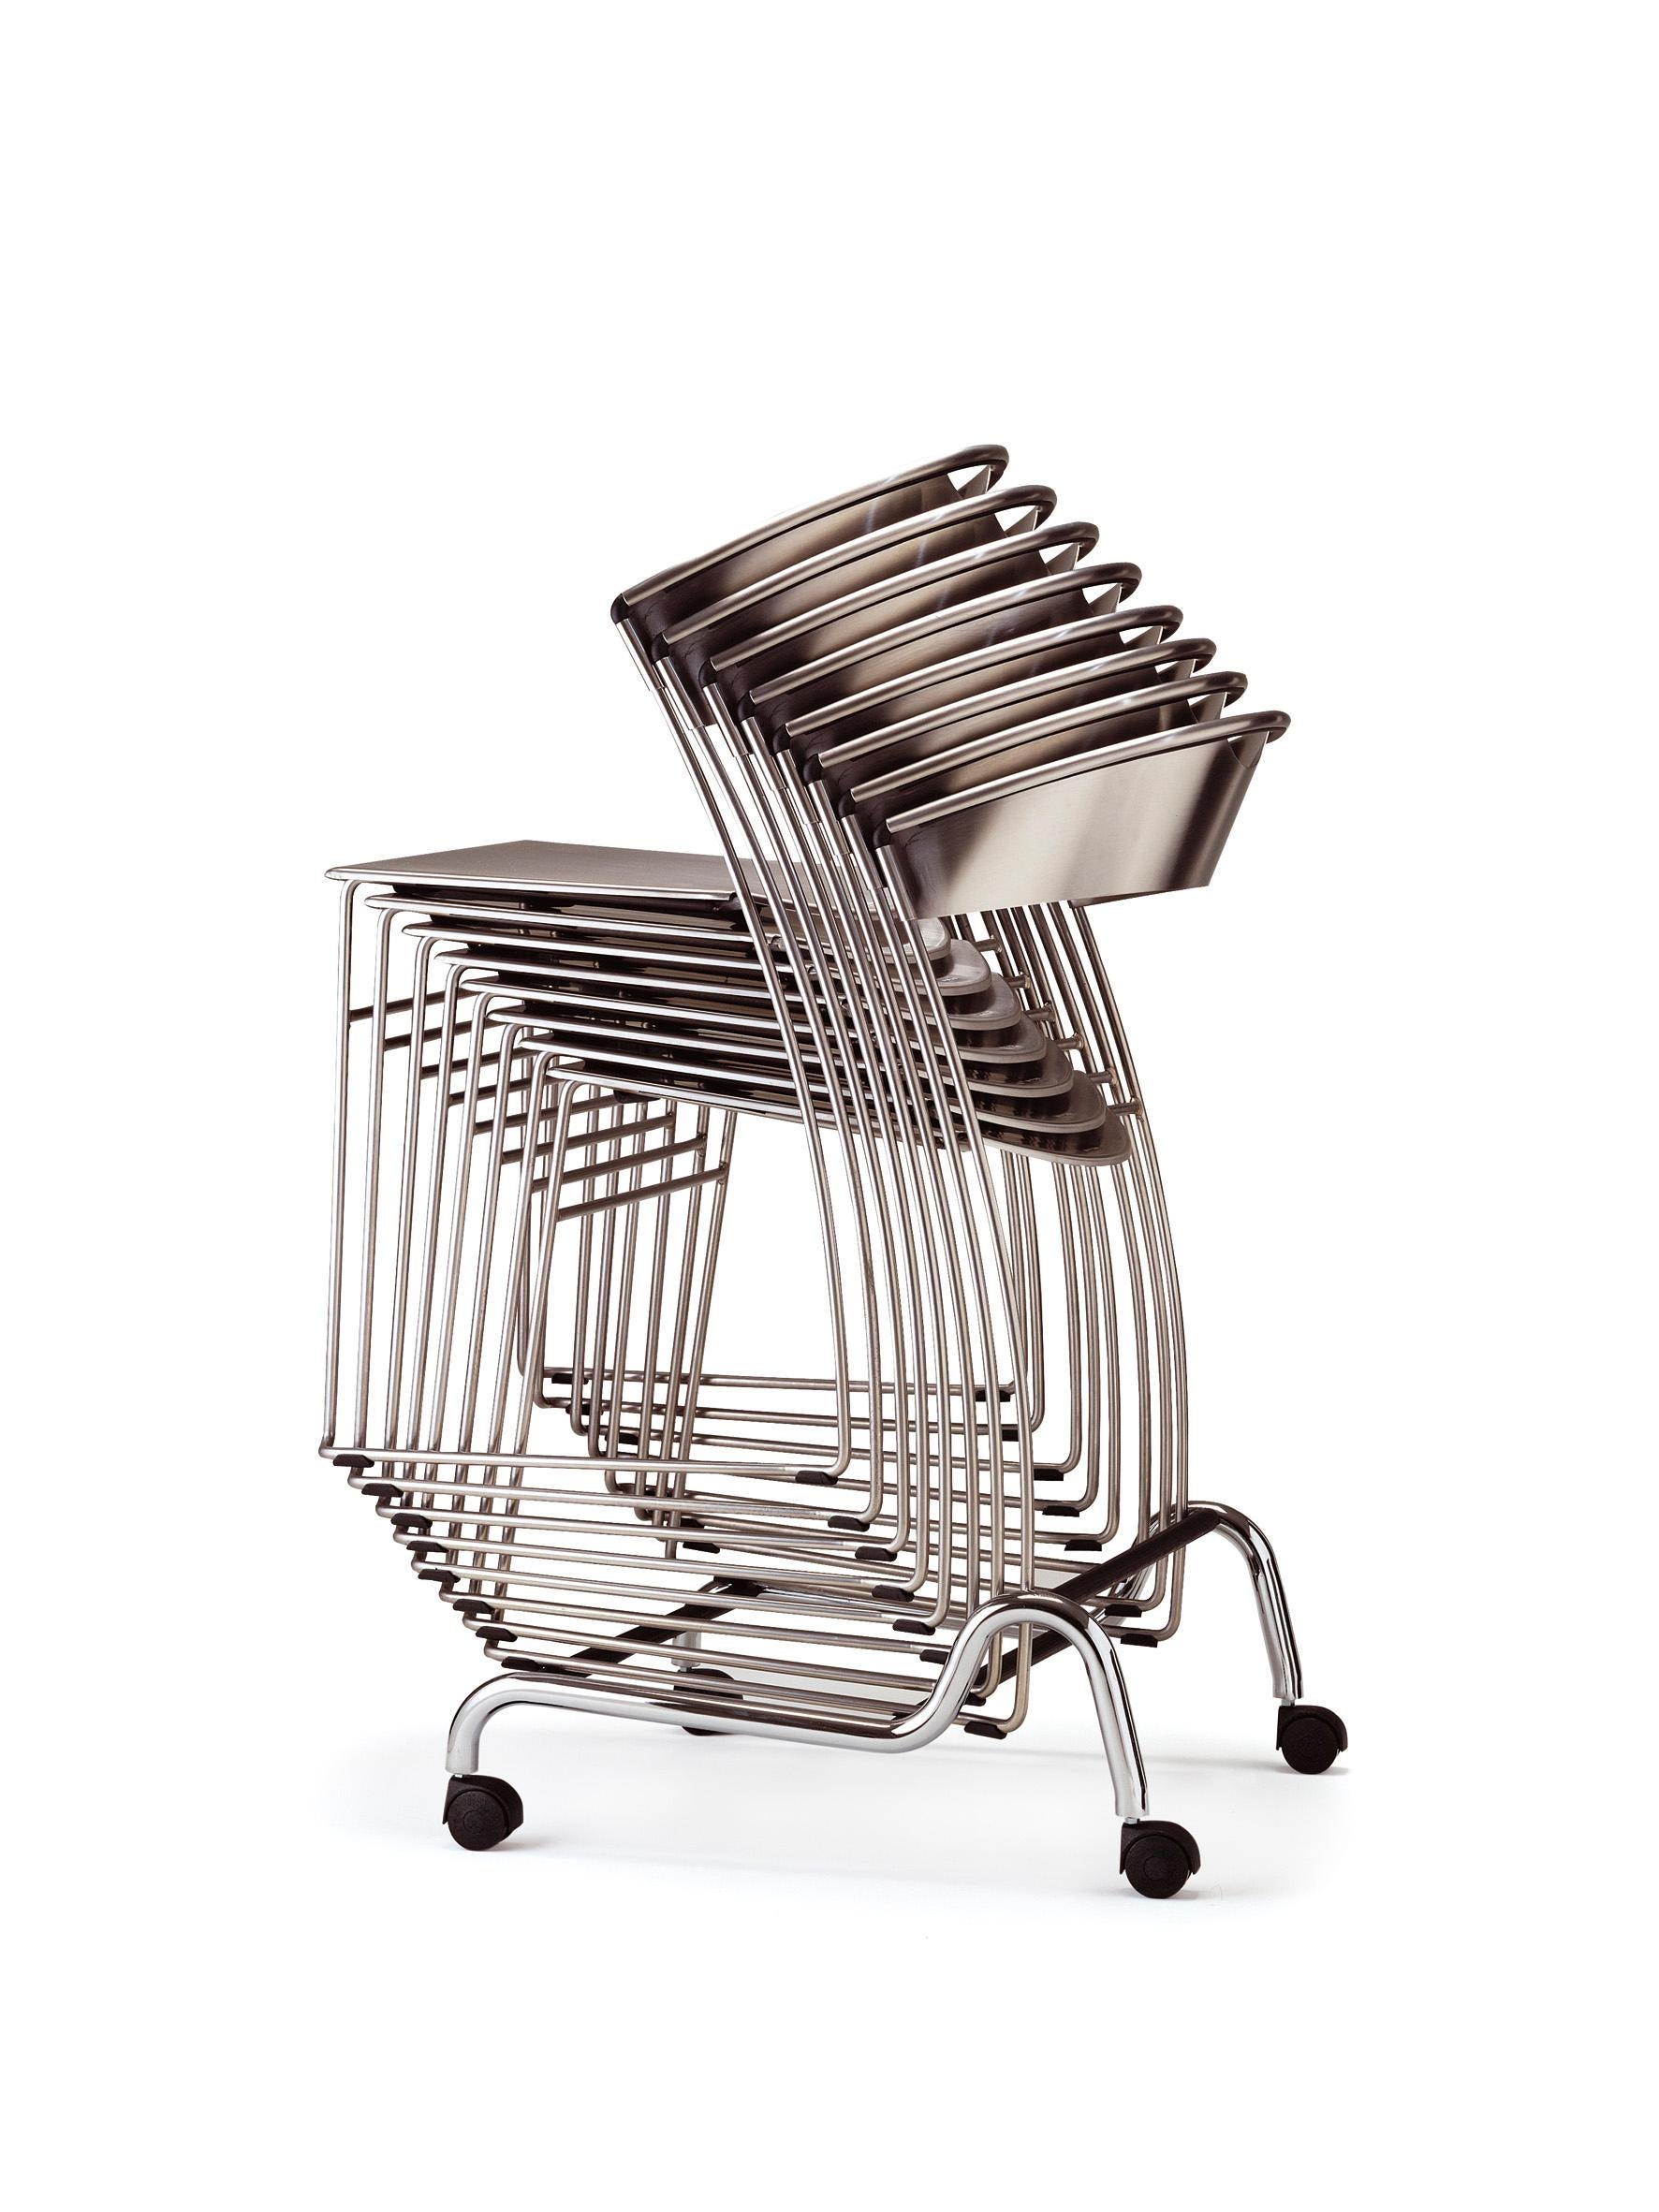  Baleri Italia Juliette Stackable Chair in Black Steel by Hannes Wettstein For Sale 6